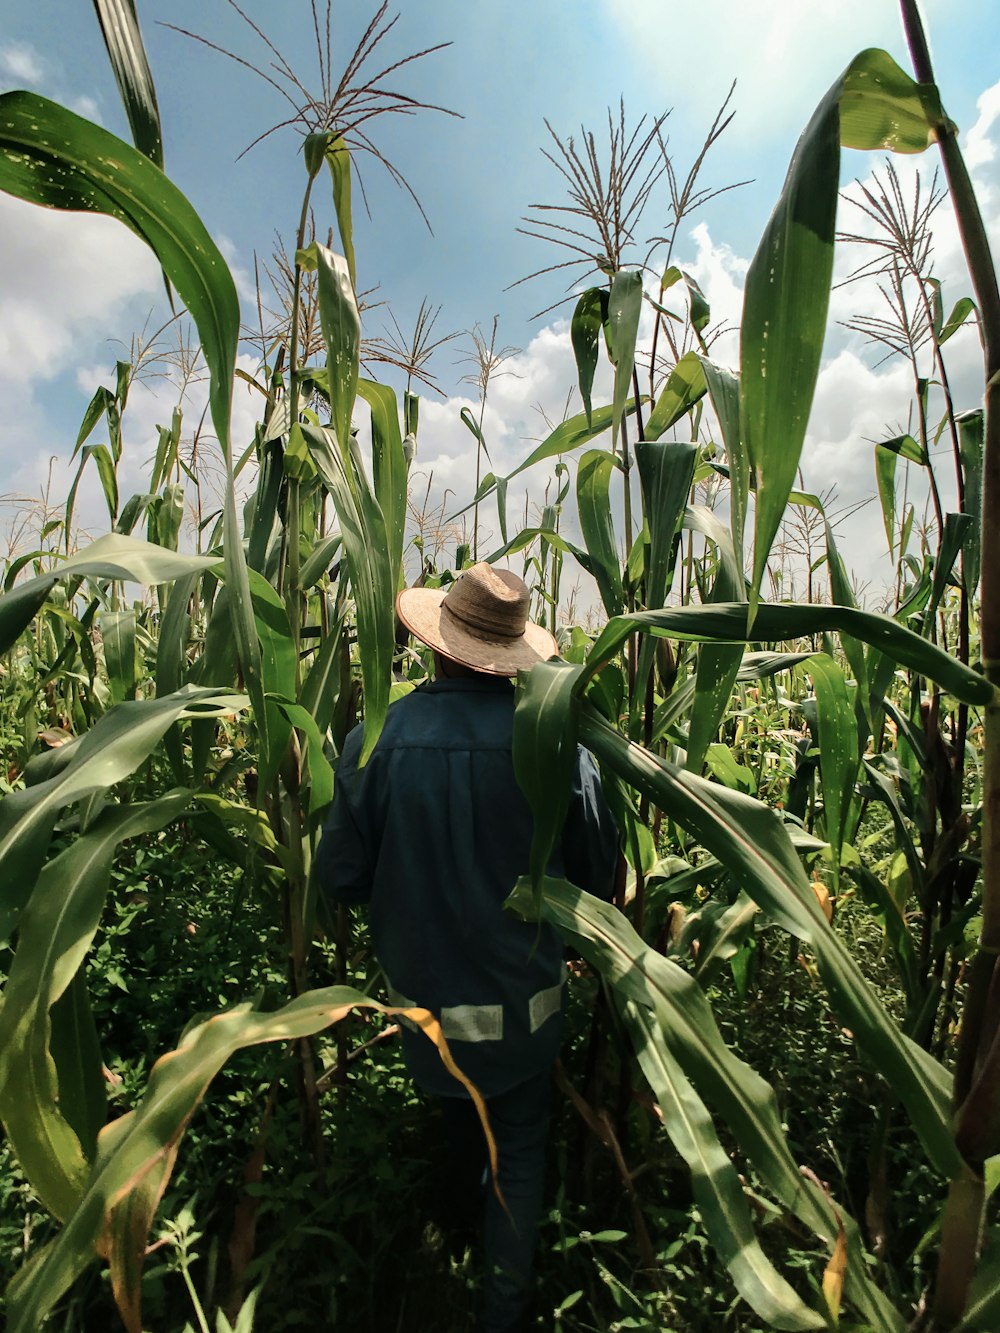 茶色の帽子をかぶった青い長袖シャツを着た女性が、昼間のトウモロコシ畑に立っている